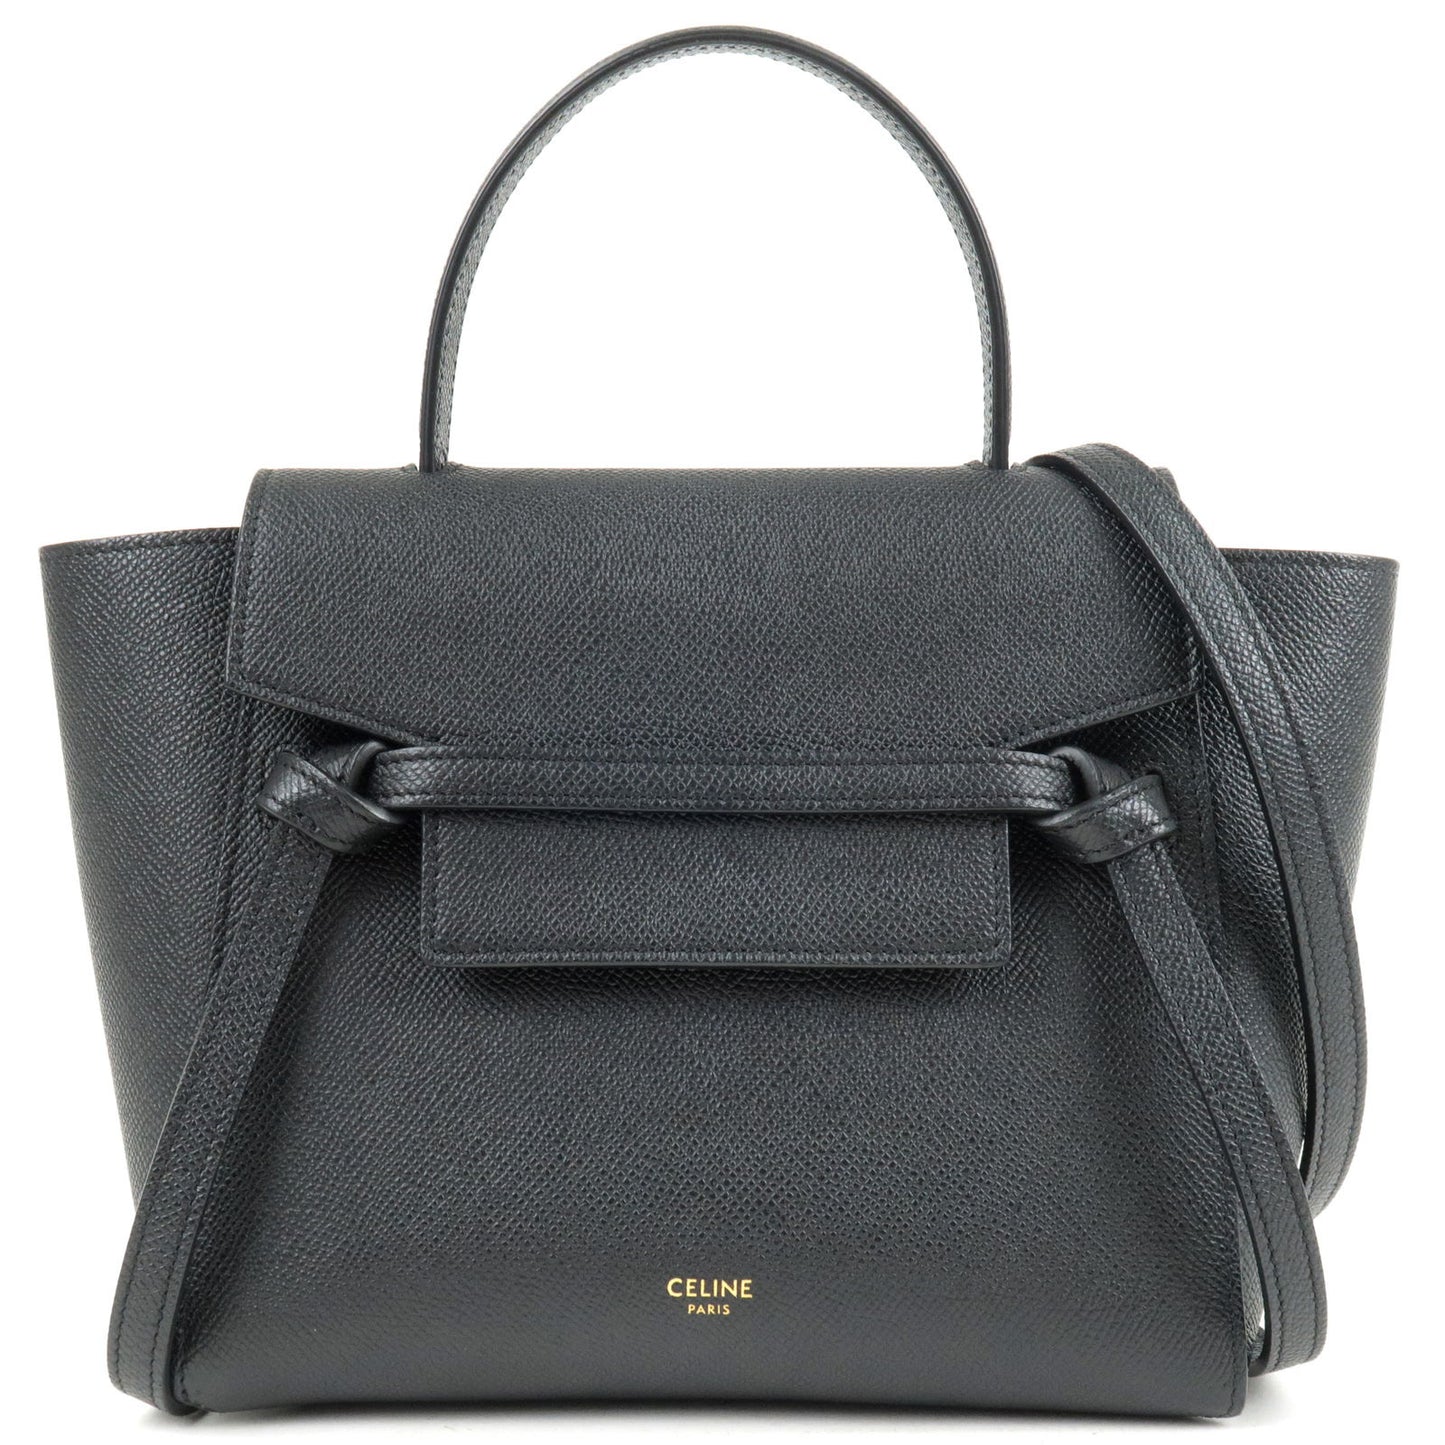 CELINE-Leather-Belt-Bag-Nano-2Way-Bag-Hand-Bag-Black-18900